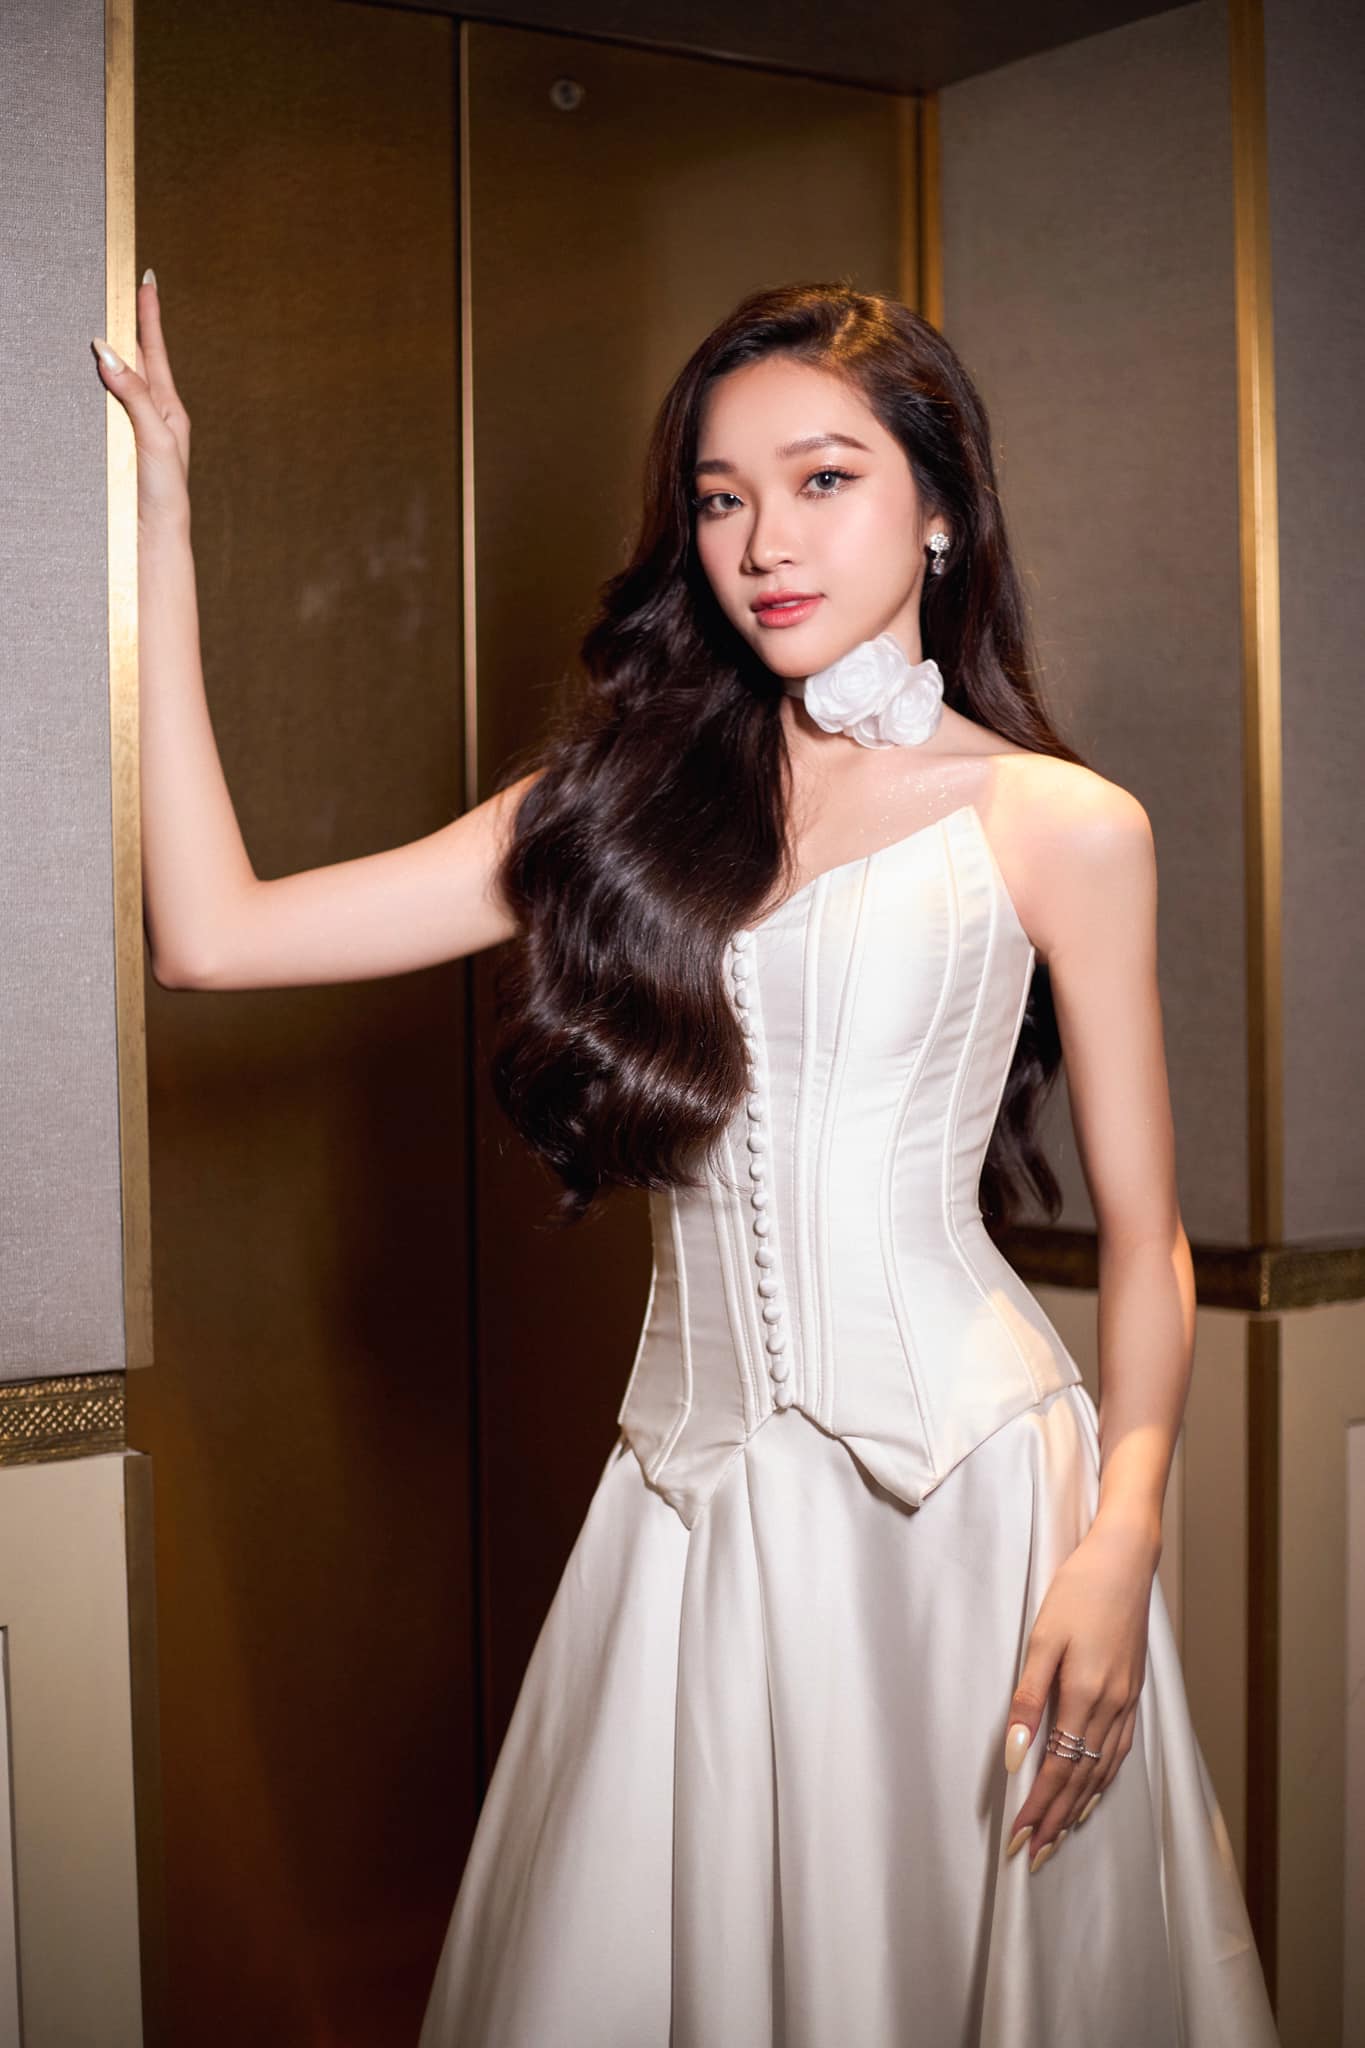 Hoa hậu 19 tuổi Kim Ngân: Thẳng thắn đối diện với dư luận trái chiều, hướng tới hình ảnh như Thảo Nhi Lê  - Ảnh 2.